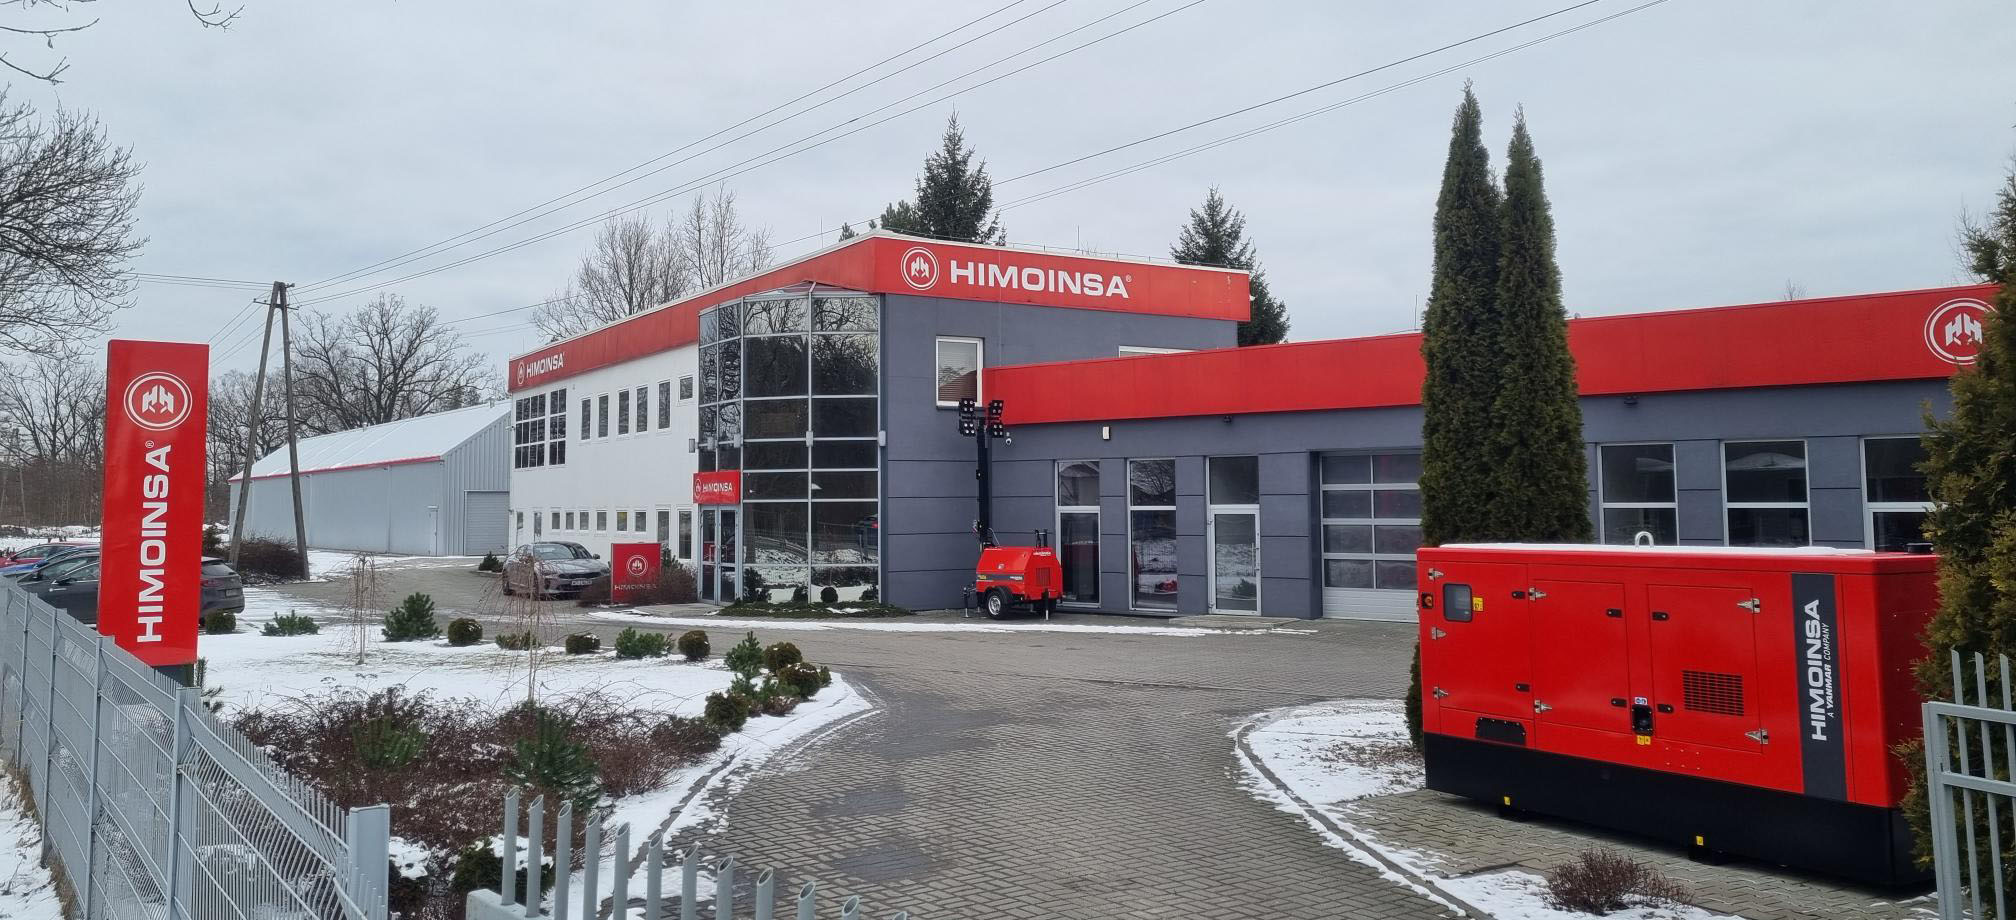 HIMOINSA Pologne agrandit ses installations pour accroître sa capacité de stockage et de distribution d’équipements